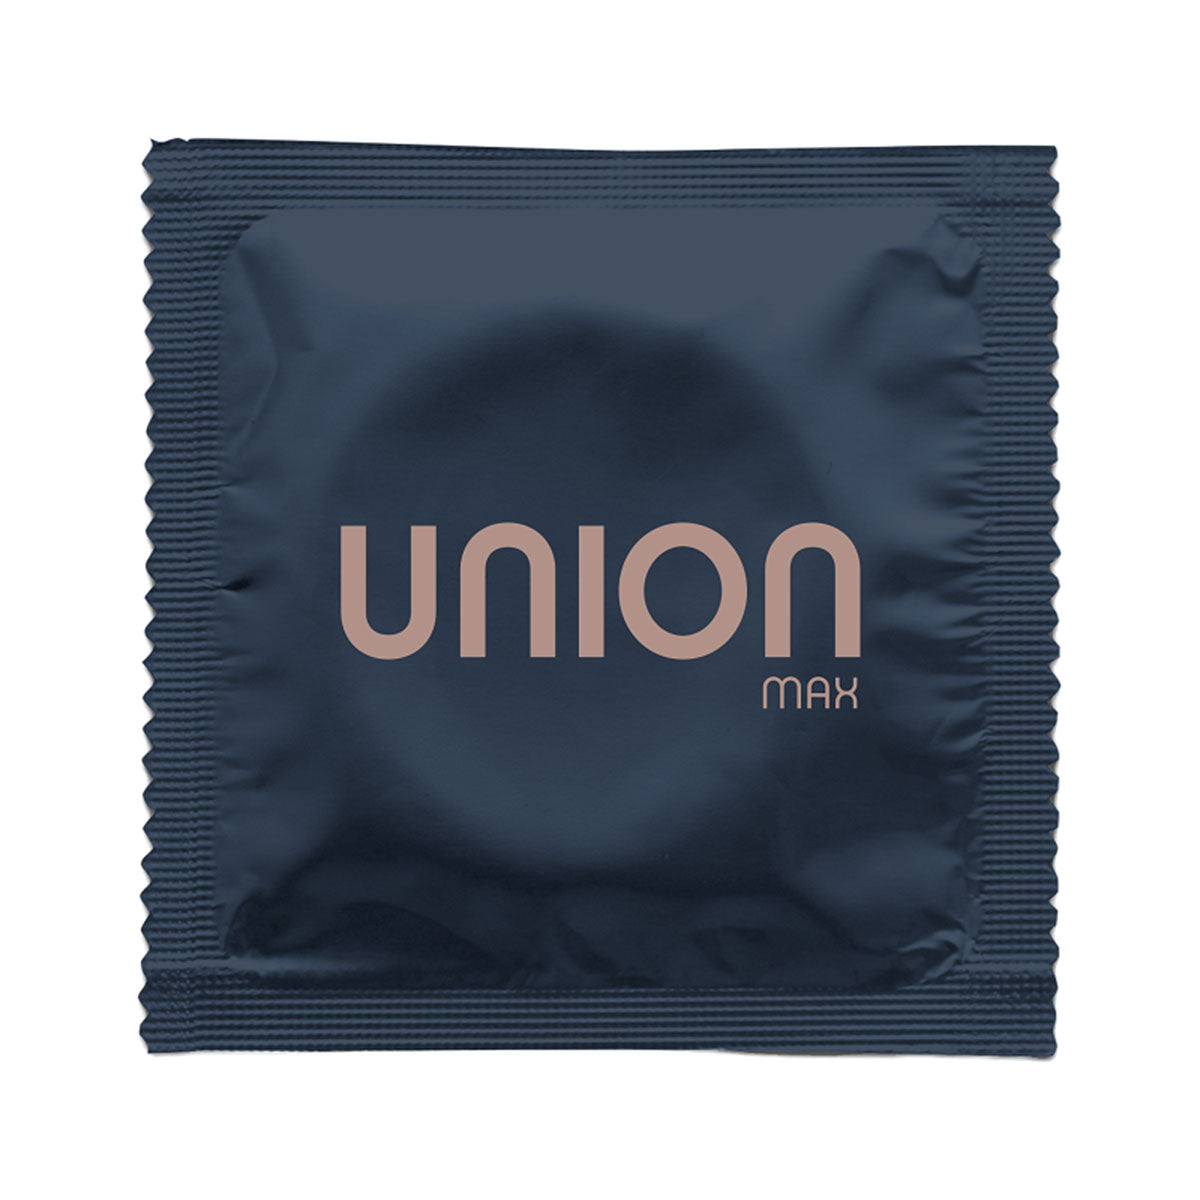 Union Max Condoms 12pk Intimates Adult Boutique